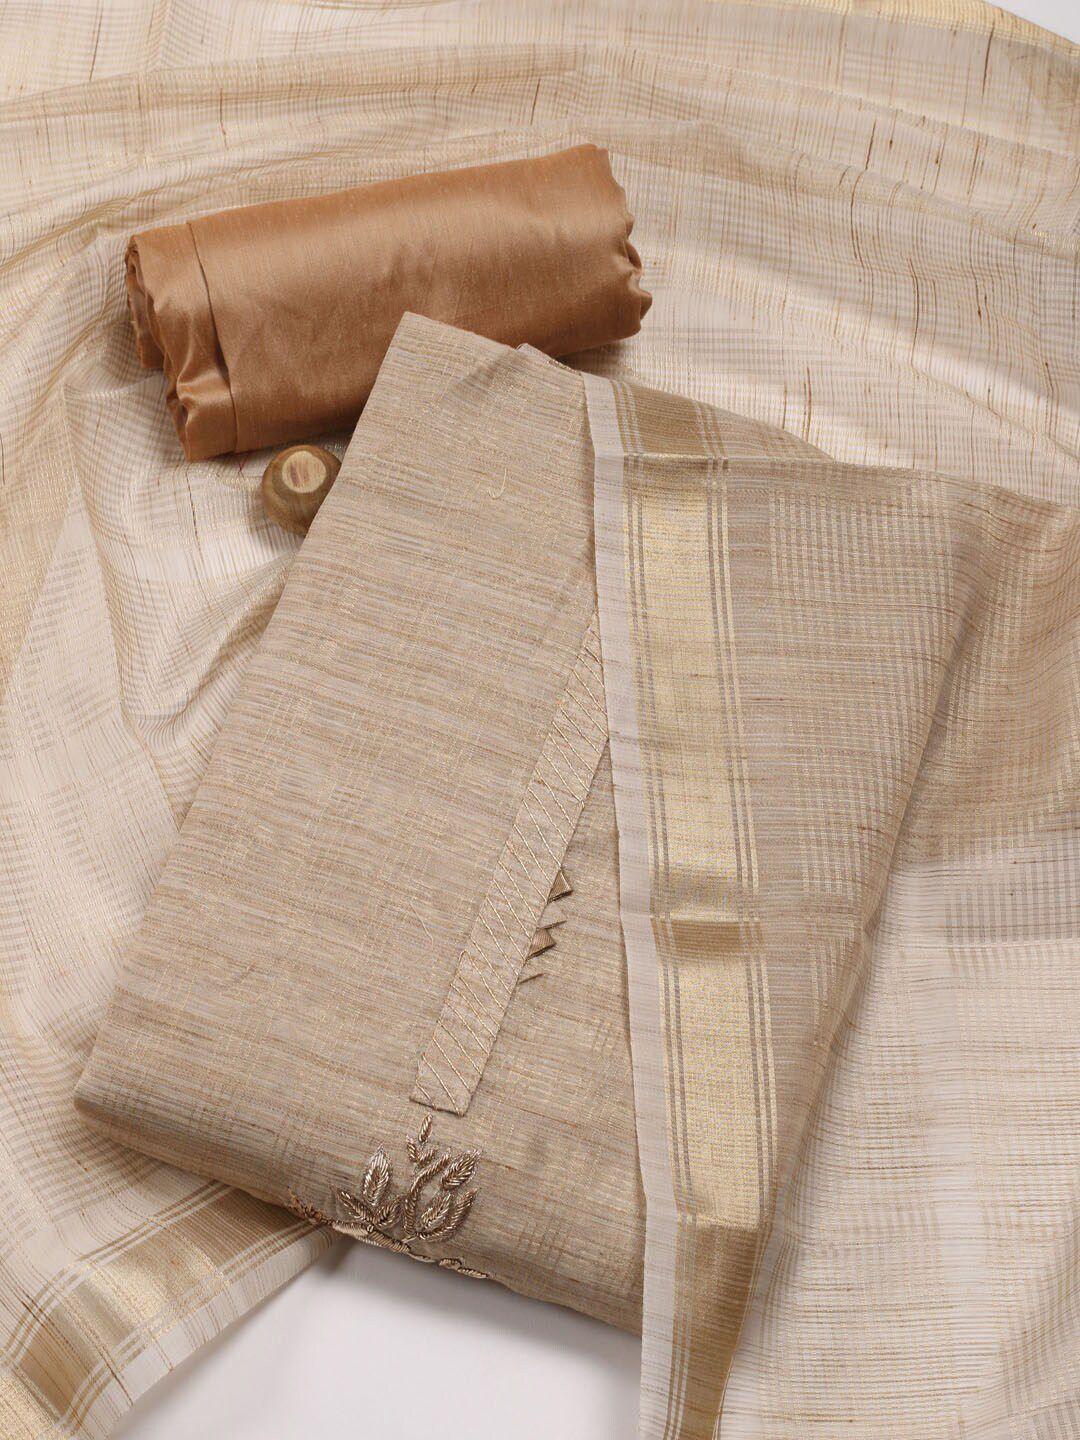 meena-bazaar-unstitched-dress-material